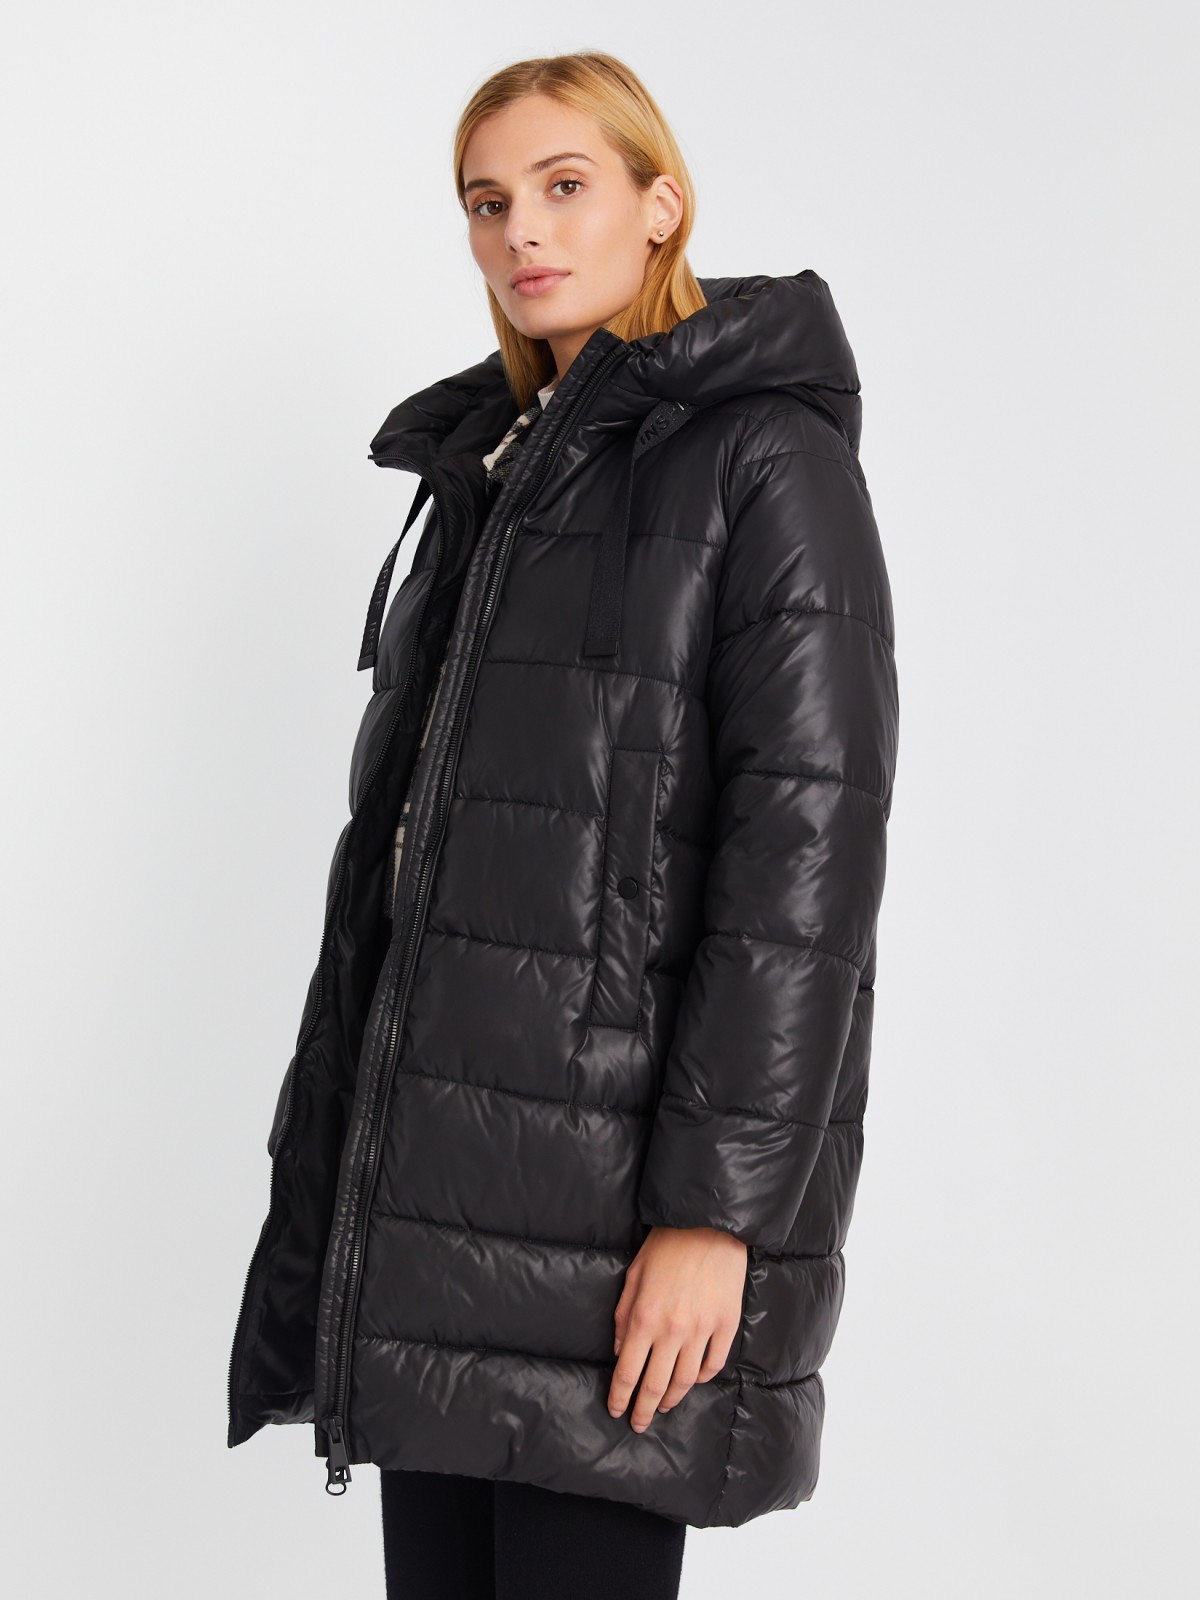 Тёплая стёганая куртка на молнии с капюшоном zolla 023345212124, цвет черный, размер XS - фото 3